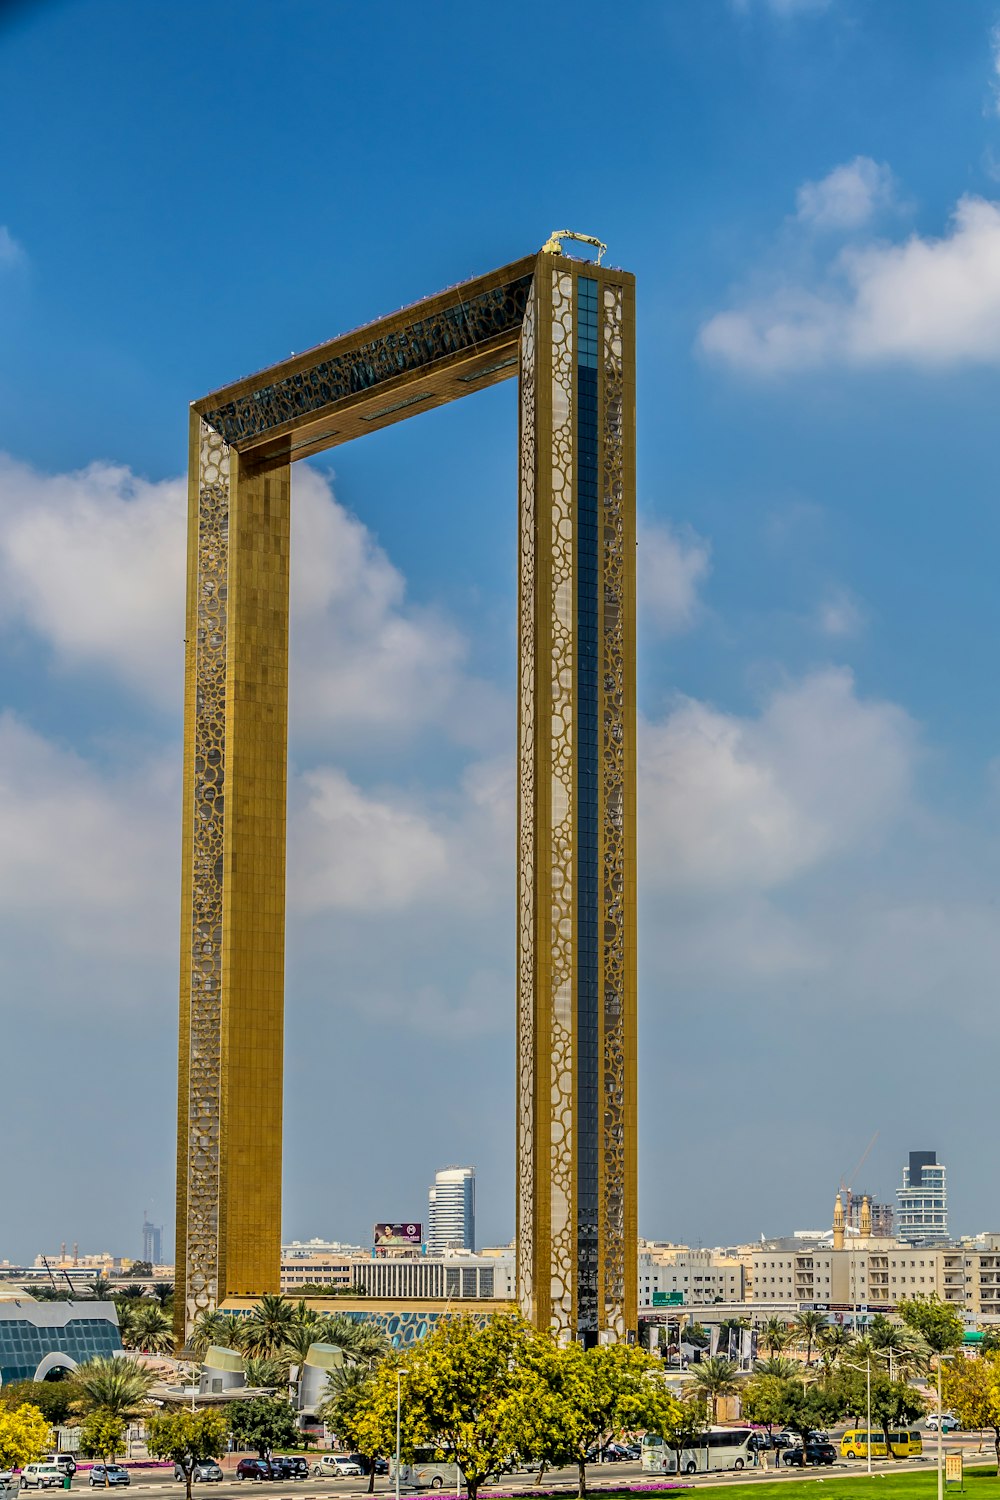 Una alta torre del reloj sentada en medio de un parque